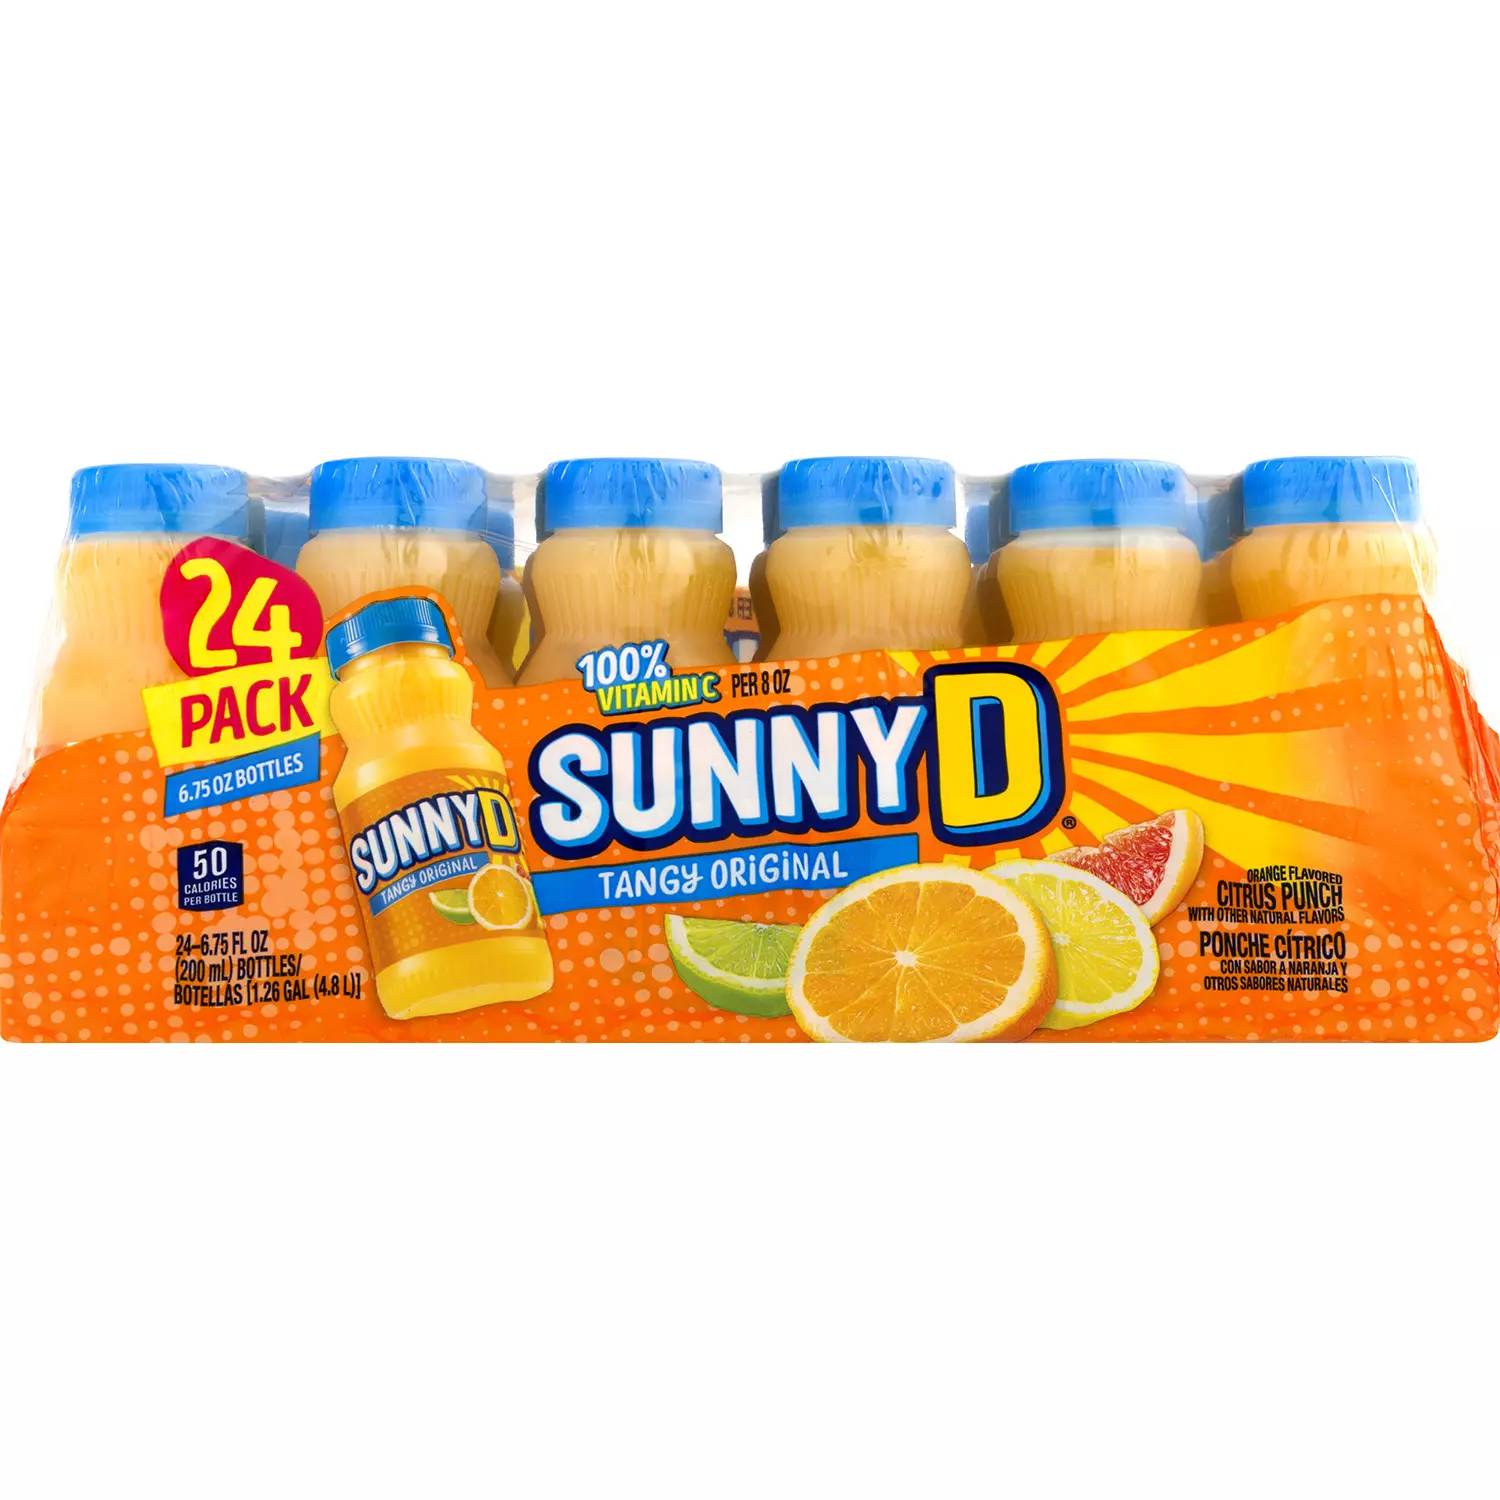 SunnyD Tangy Original Orange Flavored Citrus Punch